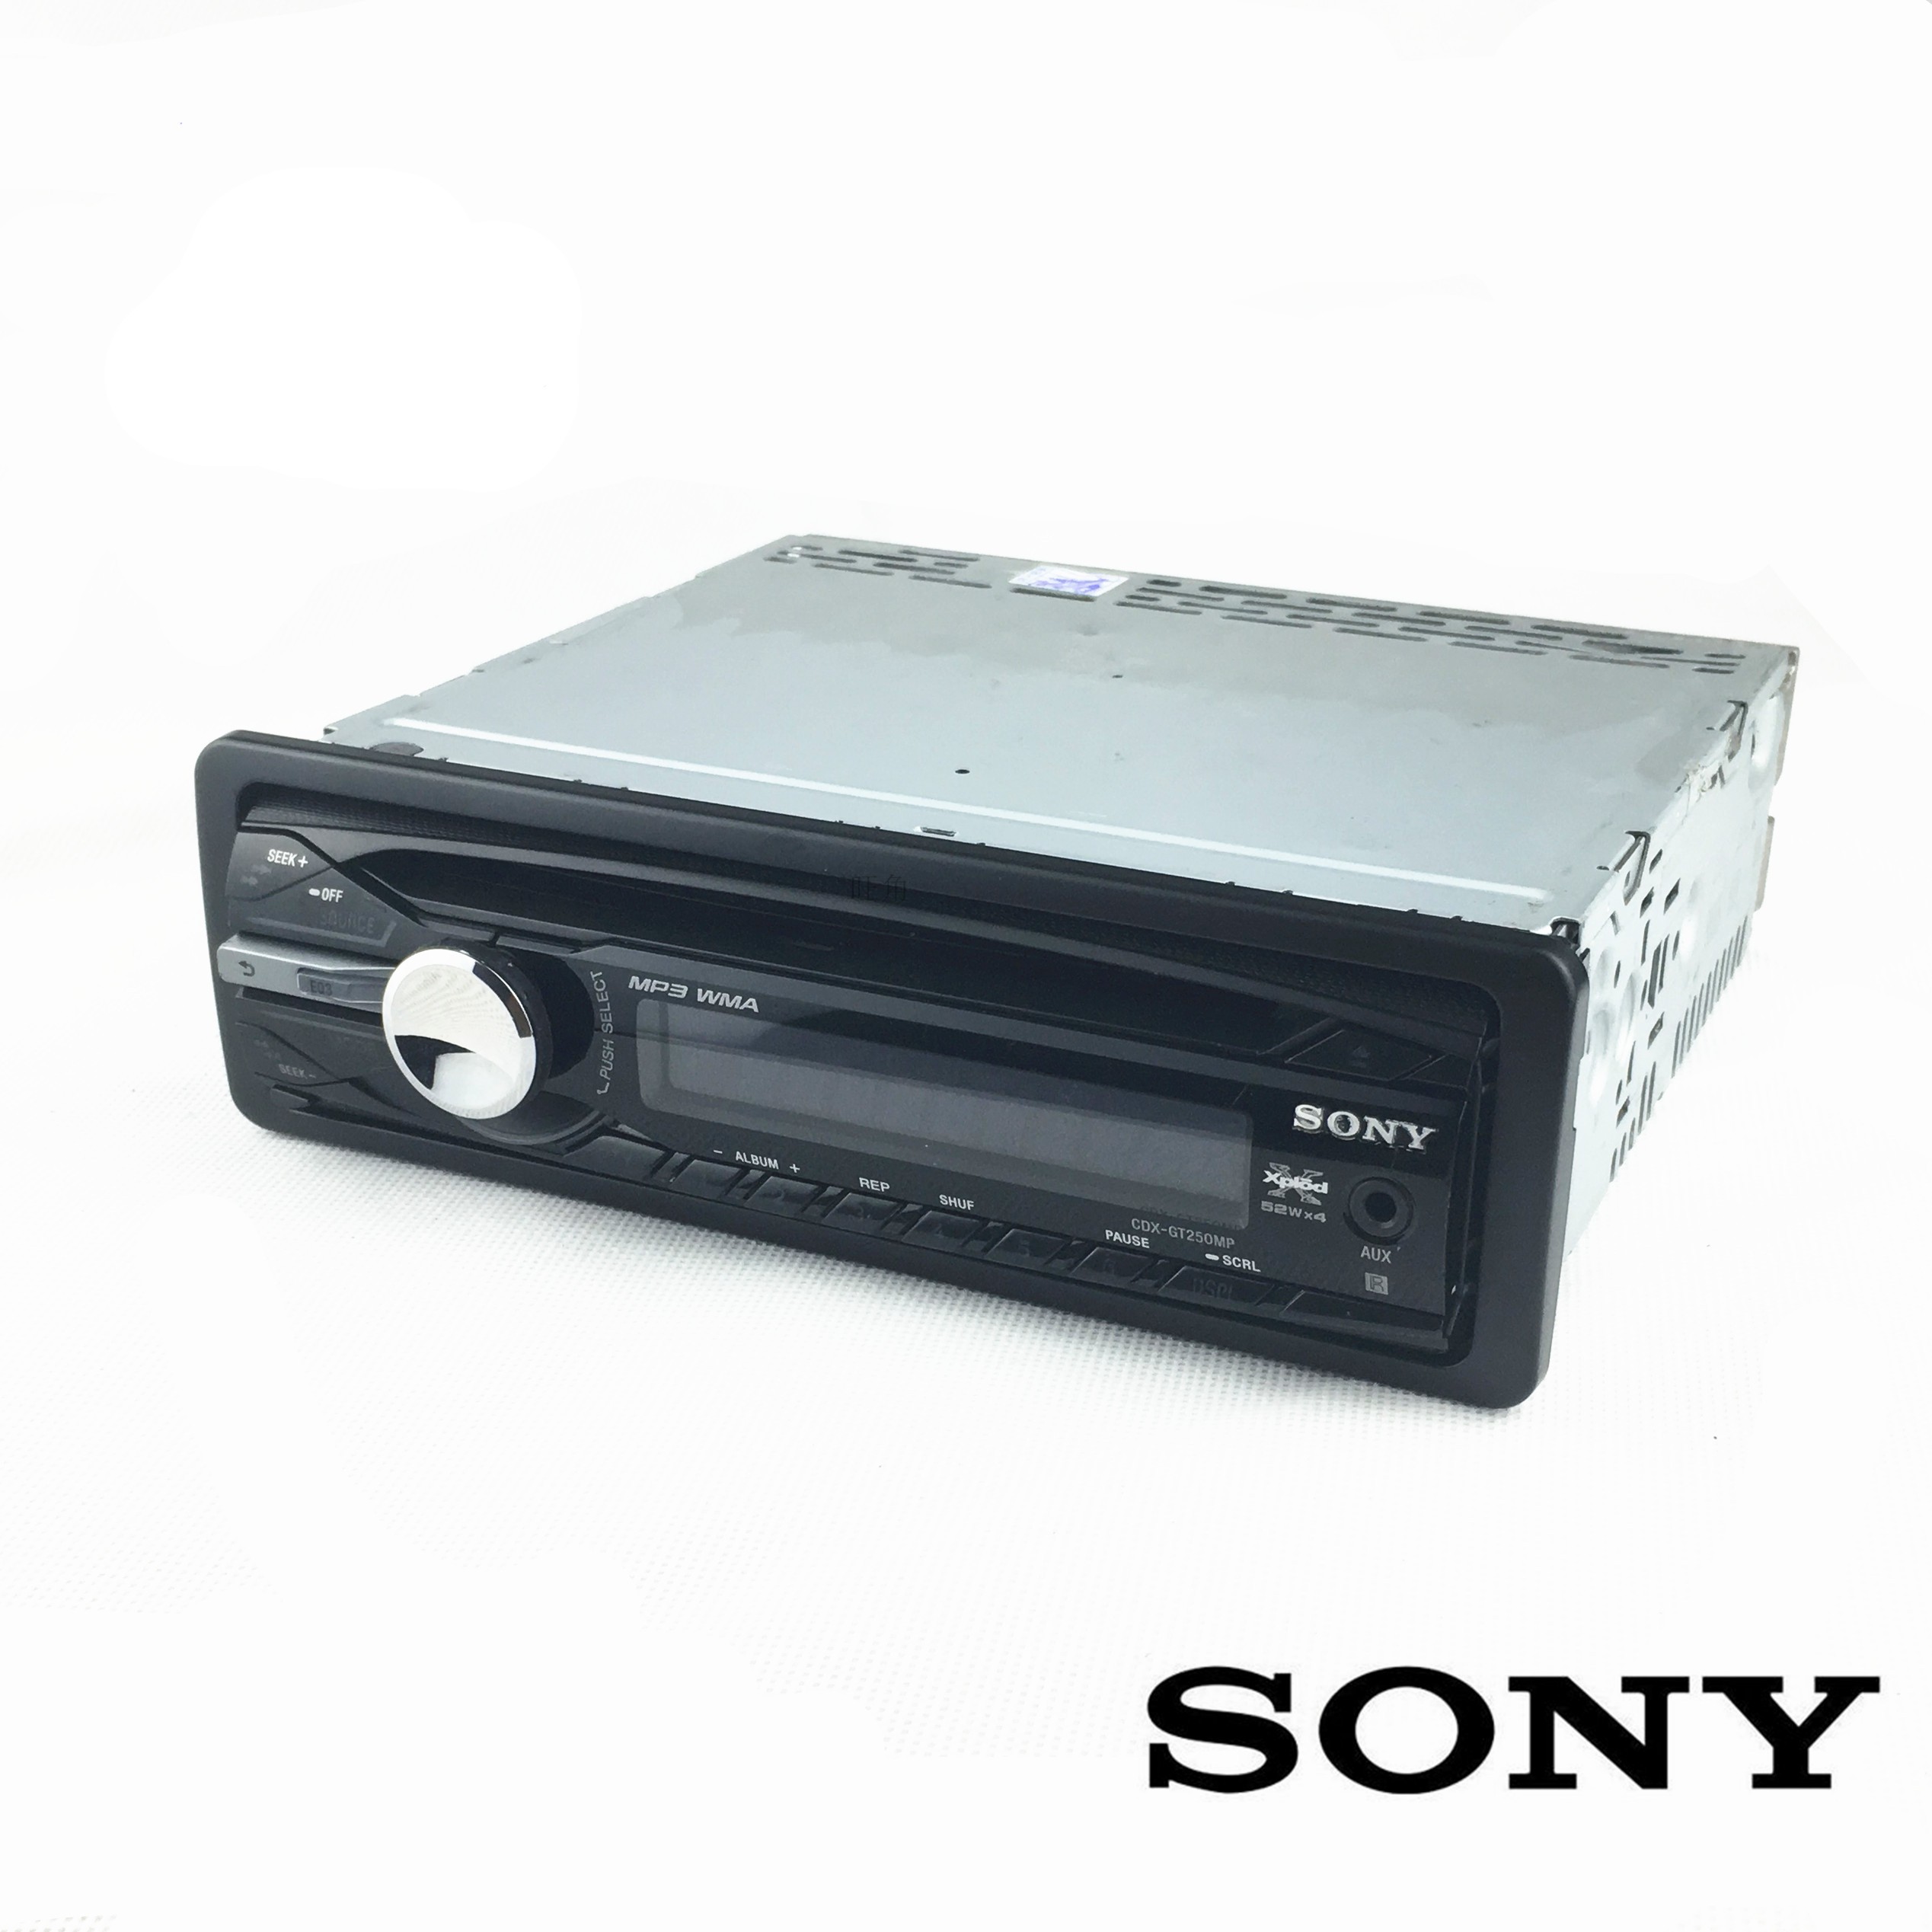 原装进口SONY车载索尼CD机头二手拆车发烧主机升级改装麦景图歌乐